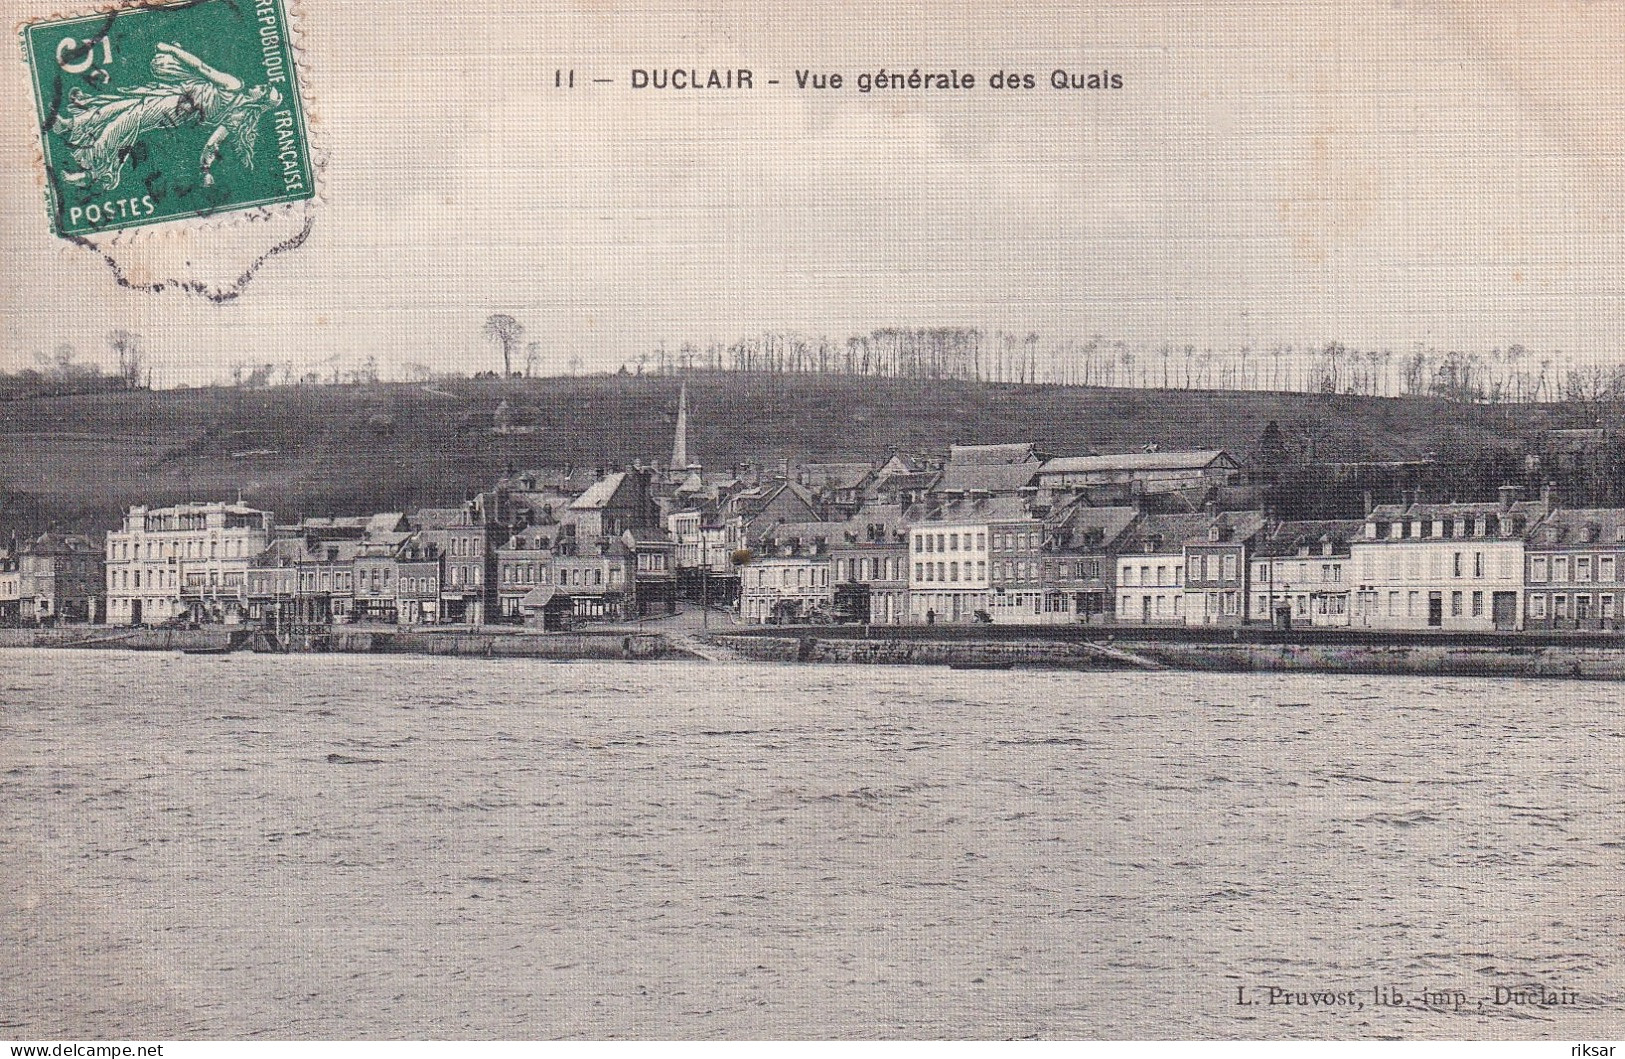 DUCLAIR - Duclair